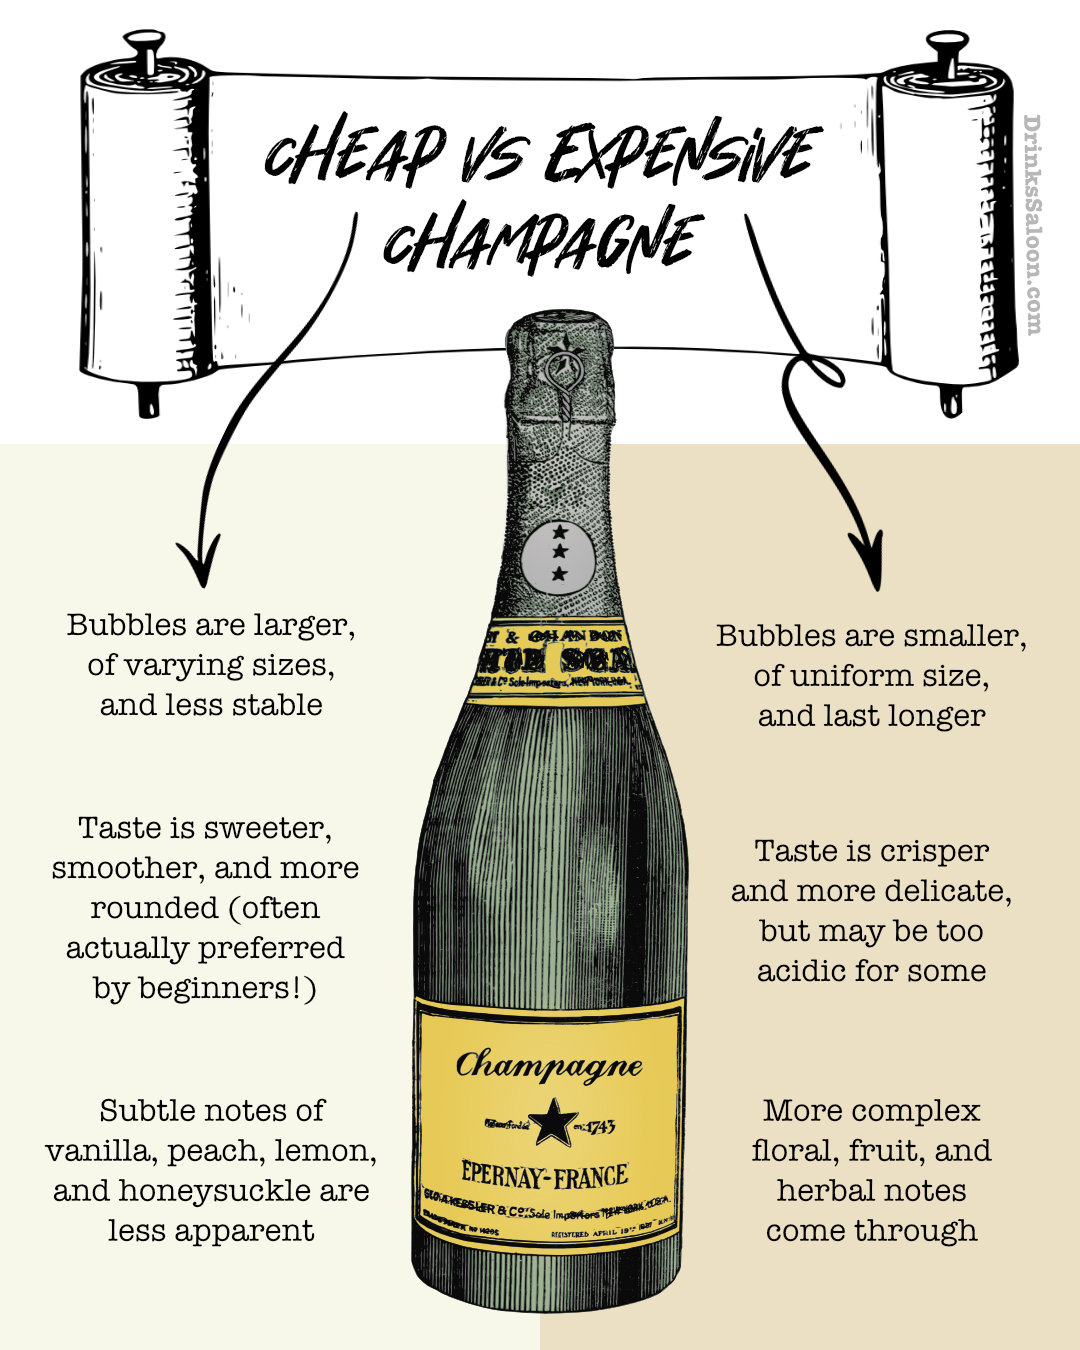 Cheap vs Expensive Champagne comparison